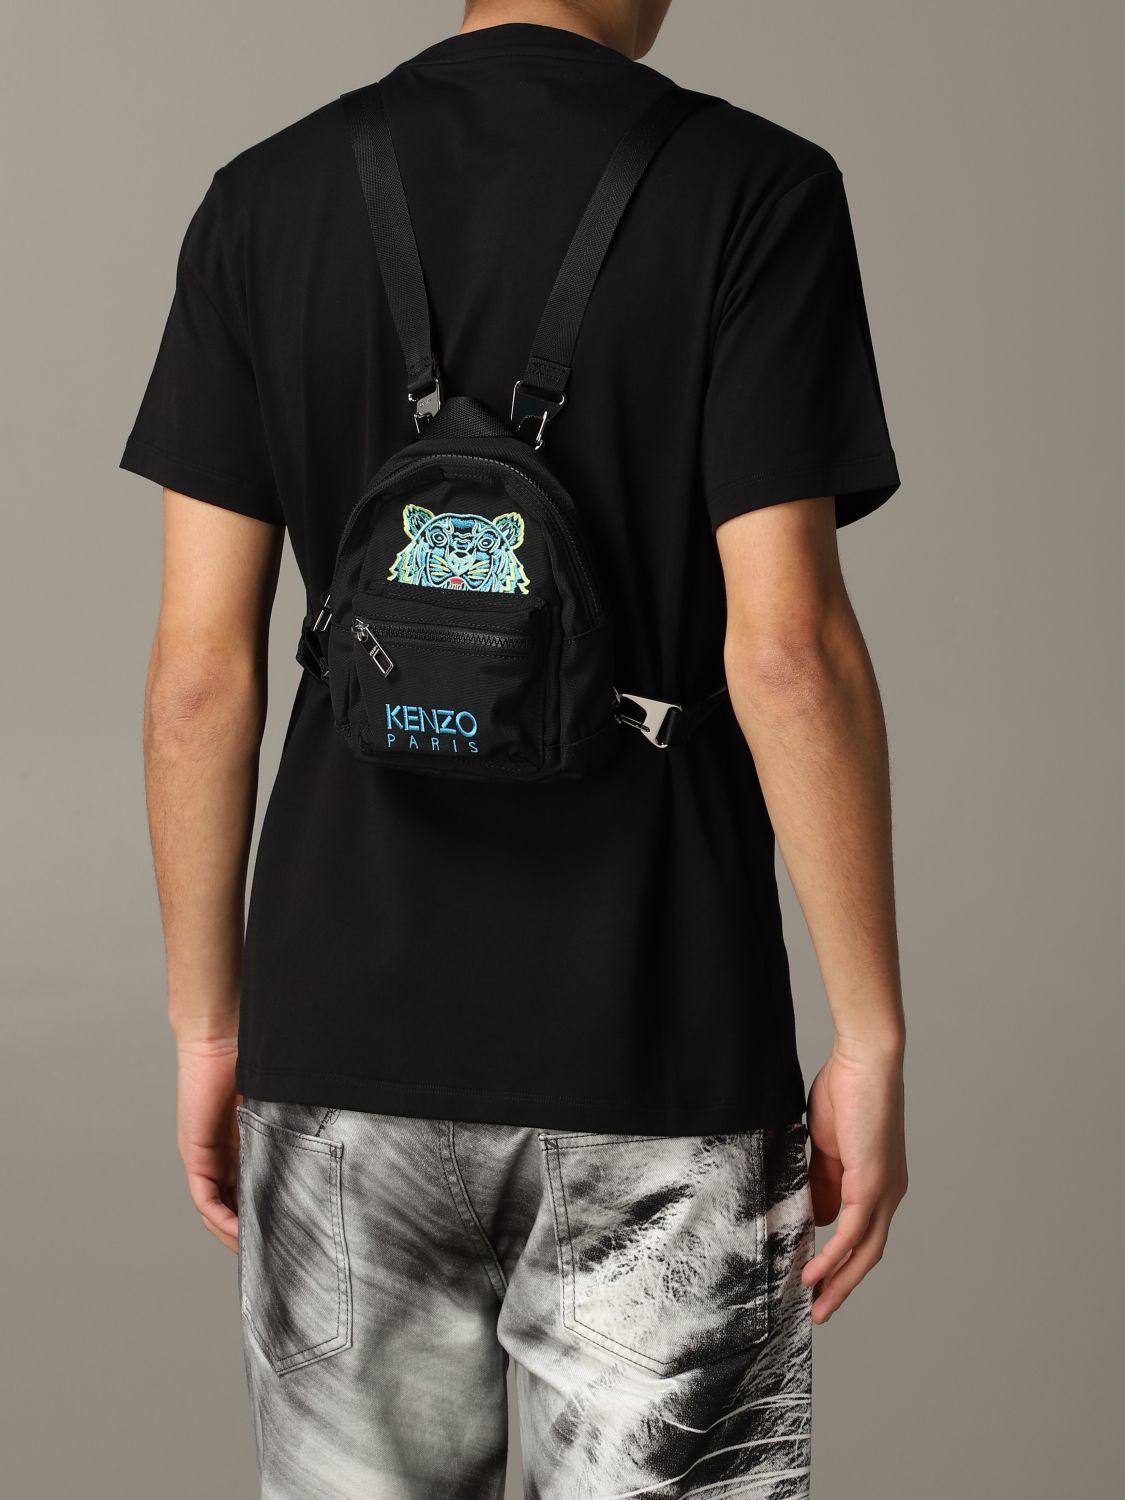 mini kenzo backpack